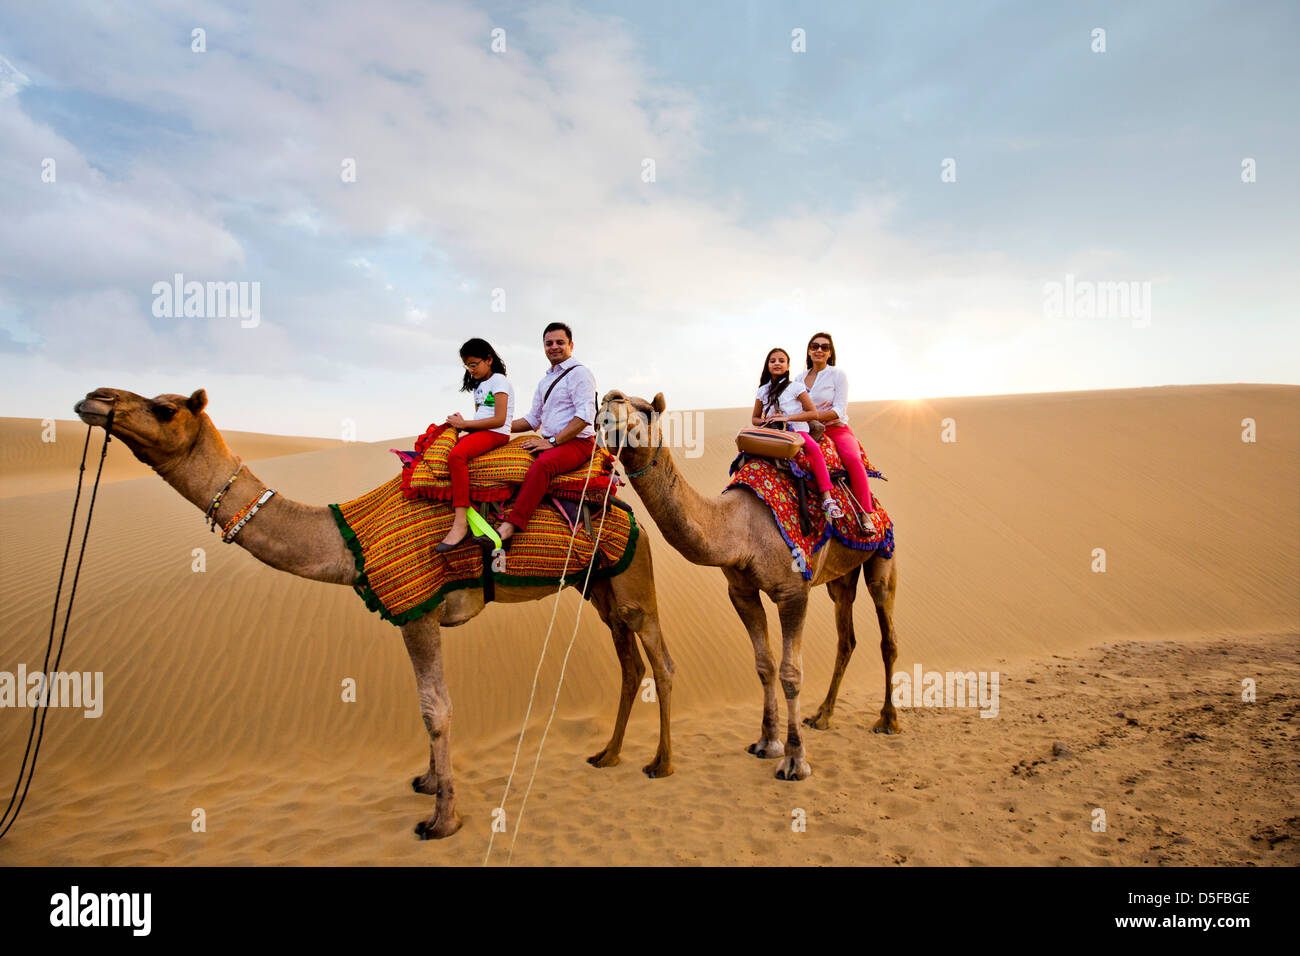 Les touristes appréciant les camel safari dans le désert, désert de Thar, Jaisalmer, Rajasthan, India Banque D'Images